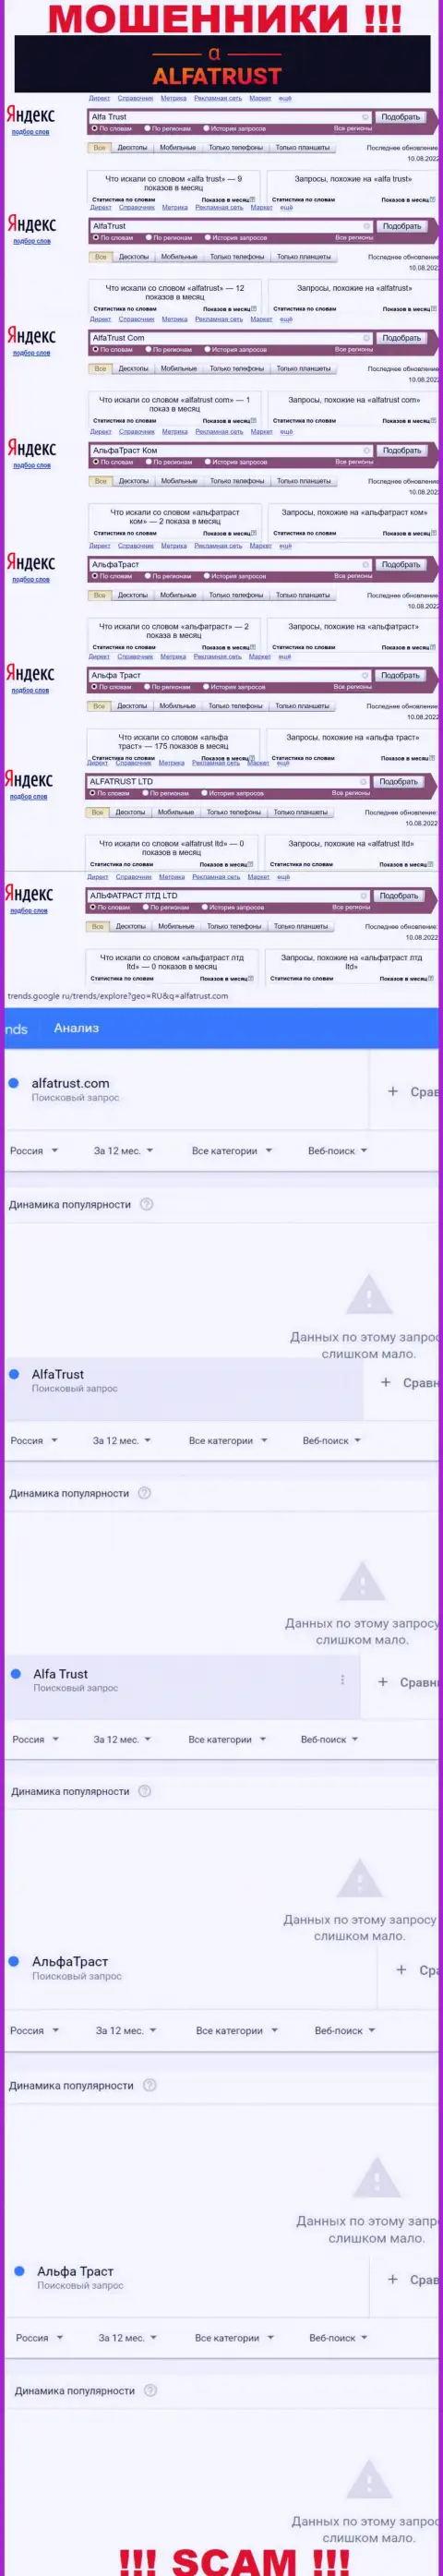 Итог поисковых запросов информации про мошенников AlfaTrust в сети интернет